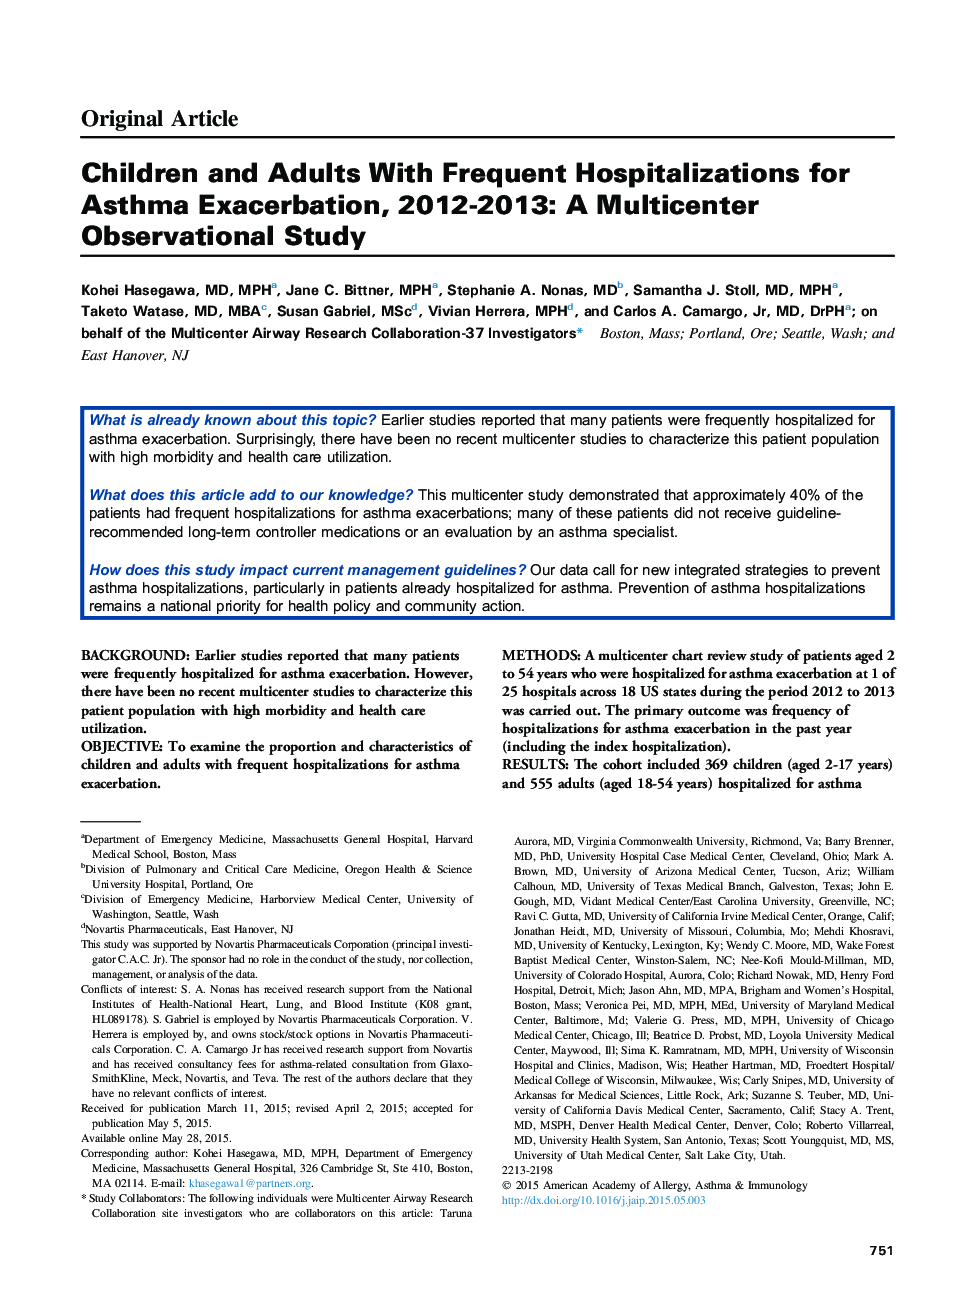 کودکان و بزرگسالان با بیمارستان های مکرر برای تشدید آسم، 2012-2013: مطالعات مشاهده چند قسمتی 